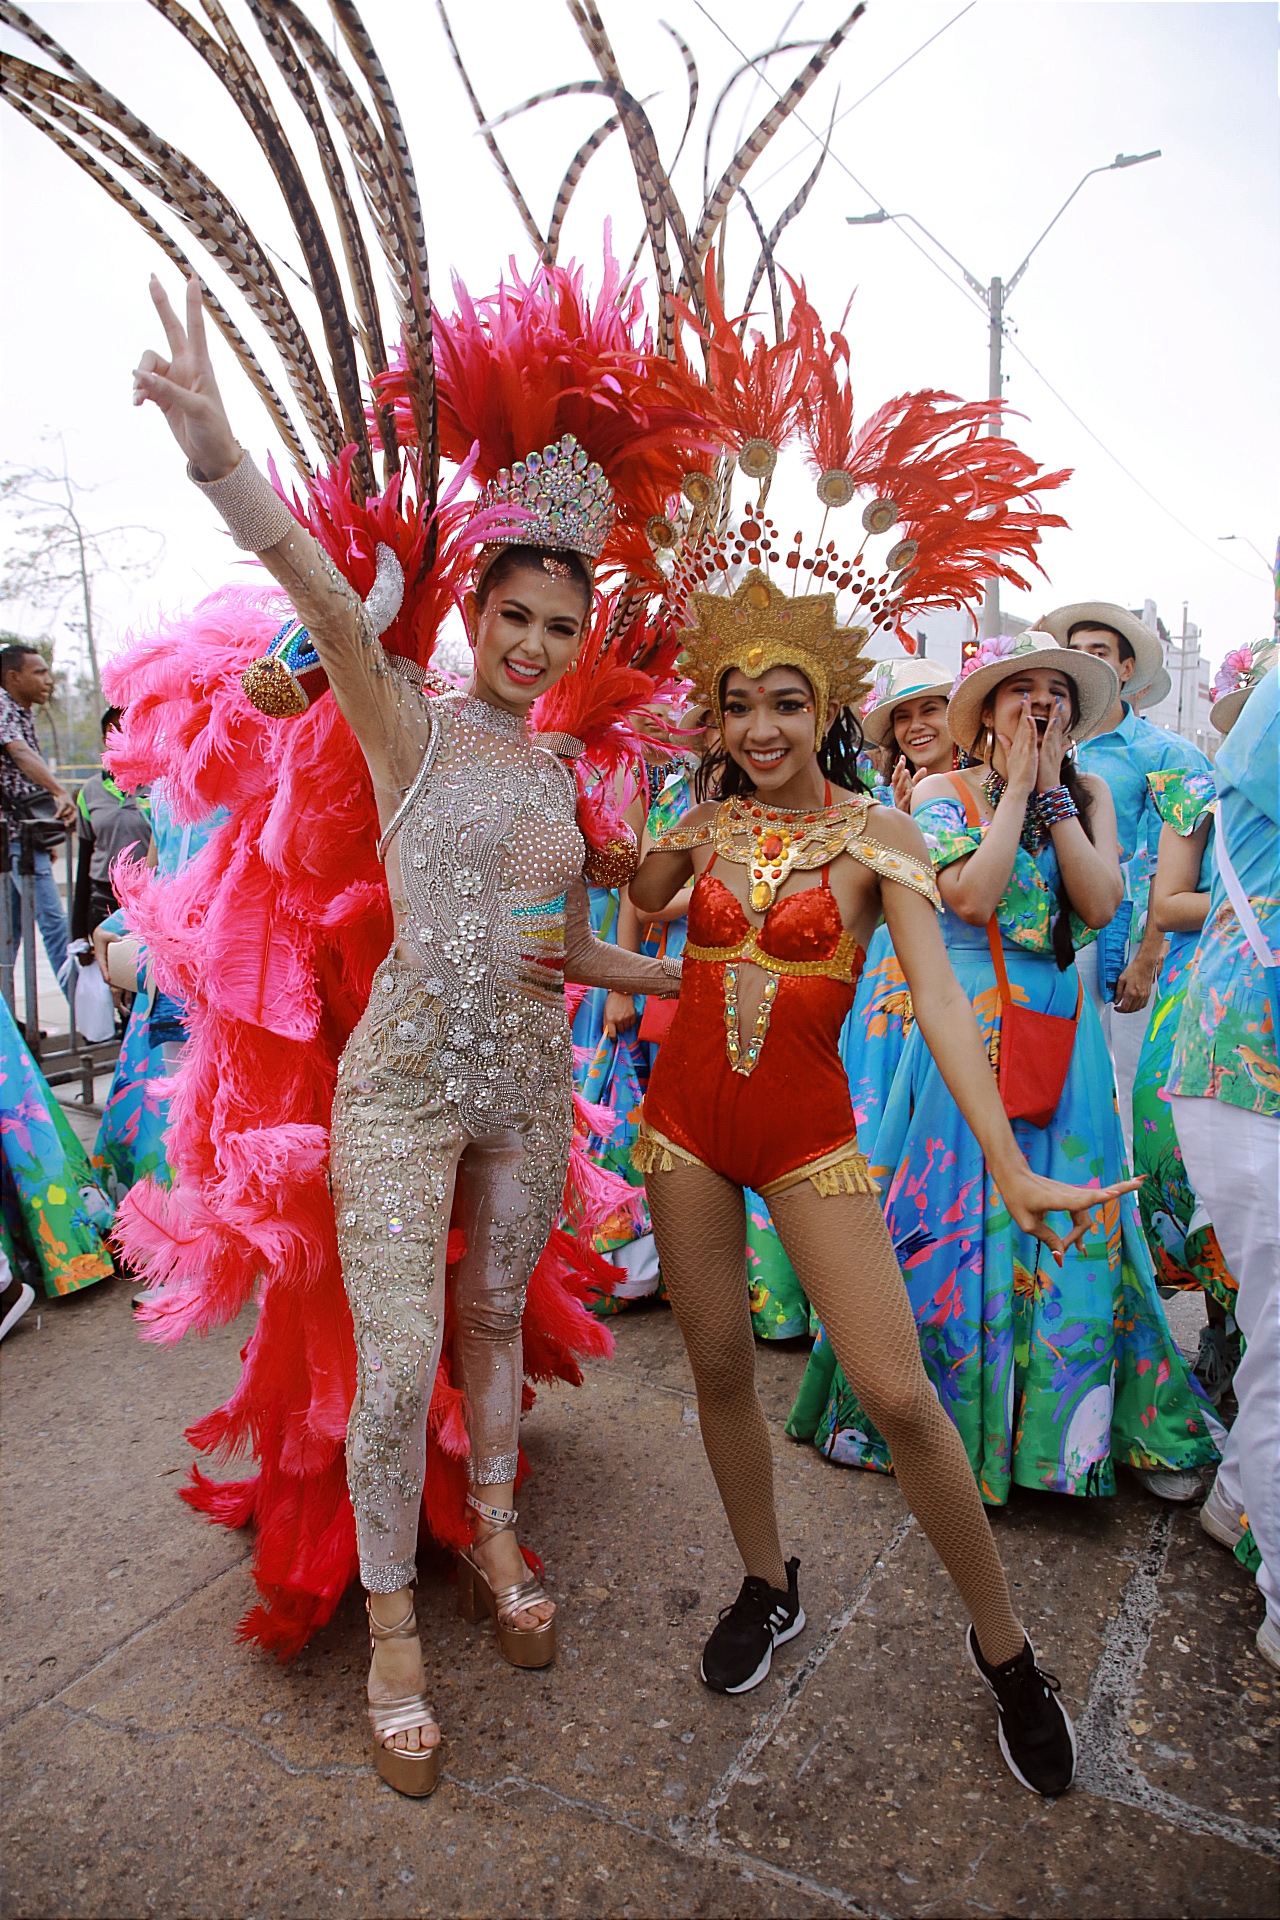 “Gracias Barranquilla por gozarse el Carnaval de la vida, la alegría y la inclusión”: Valeria Charris Salcedo